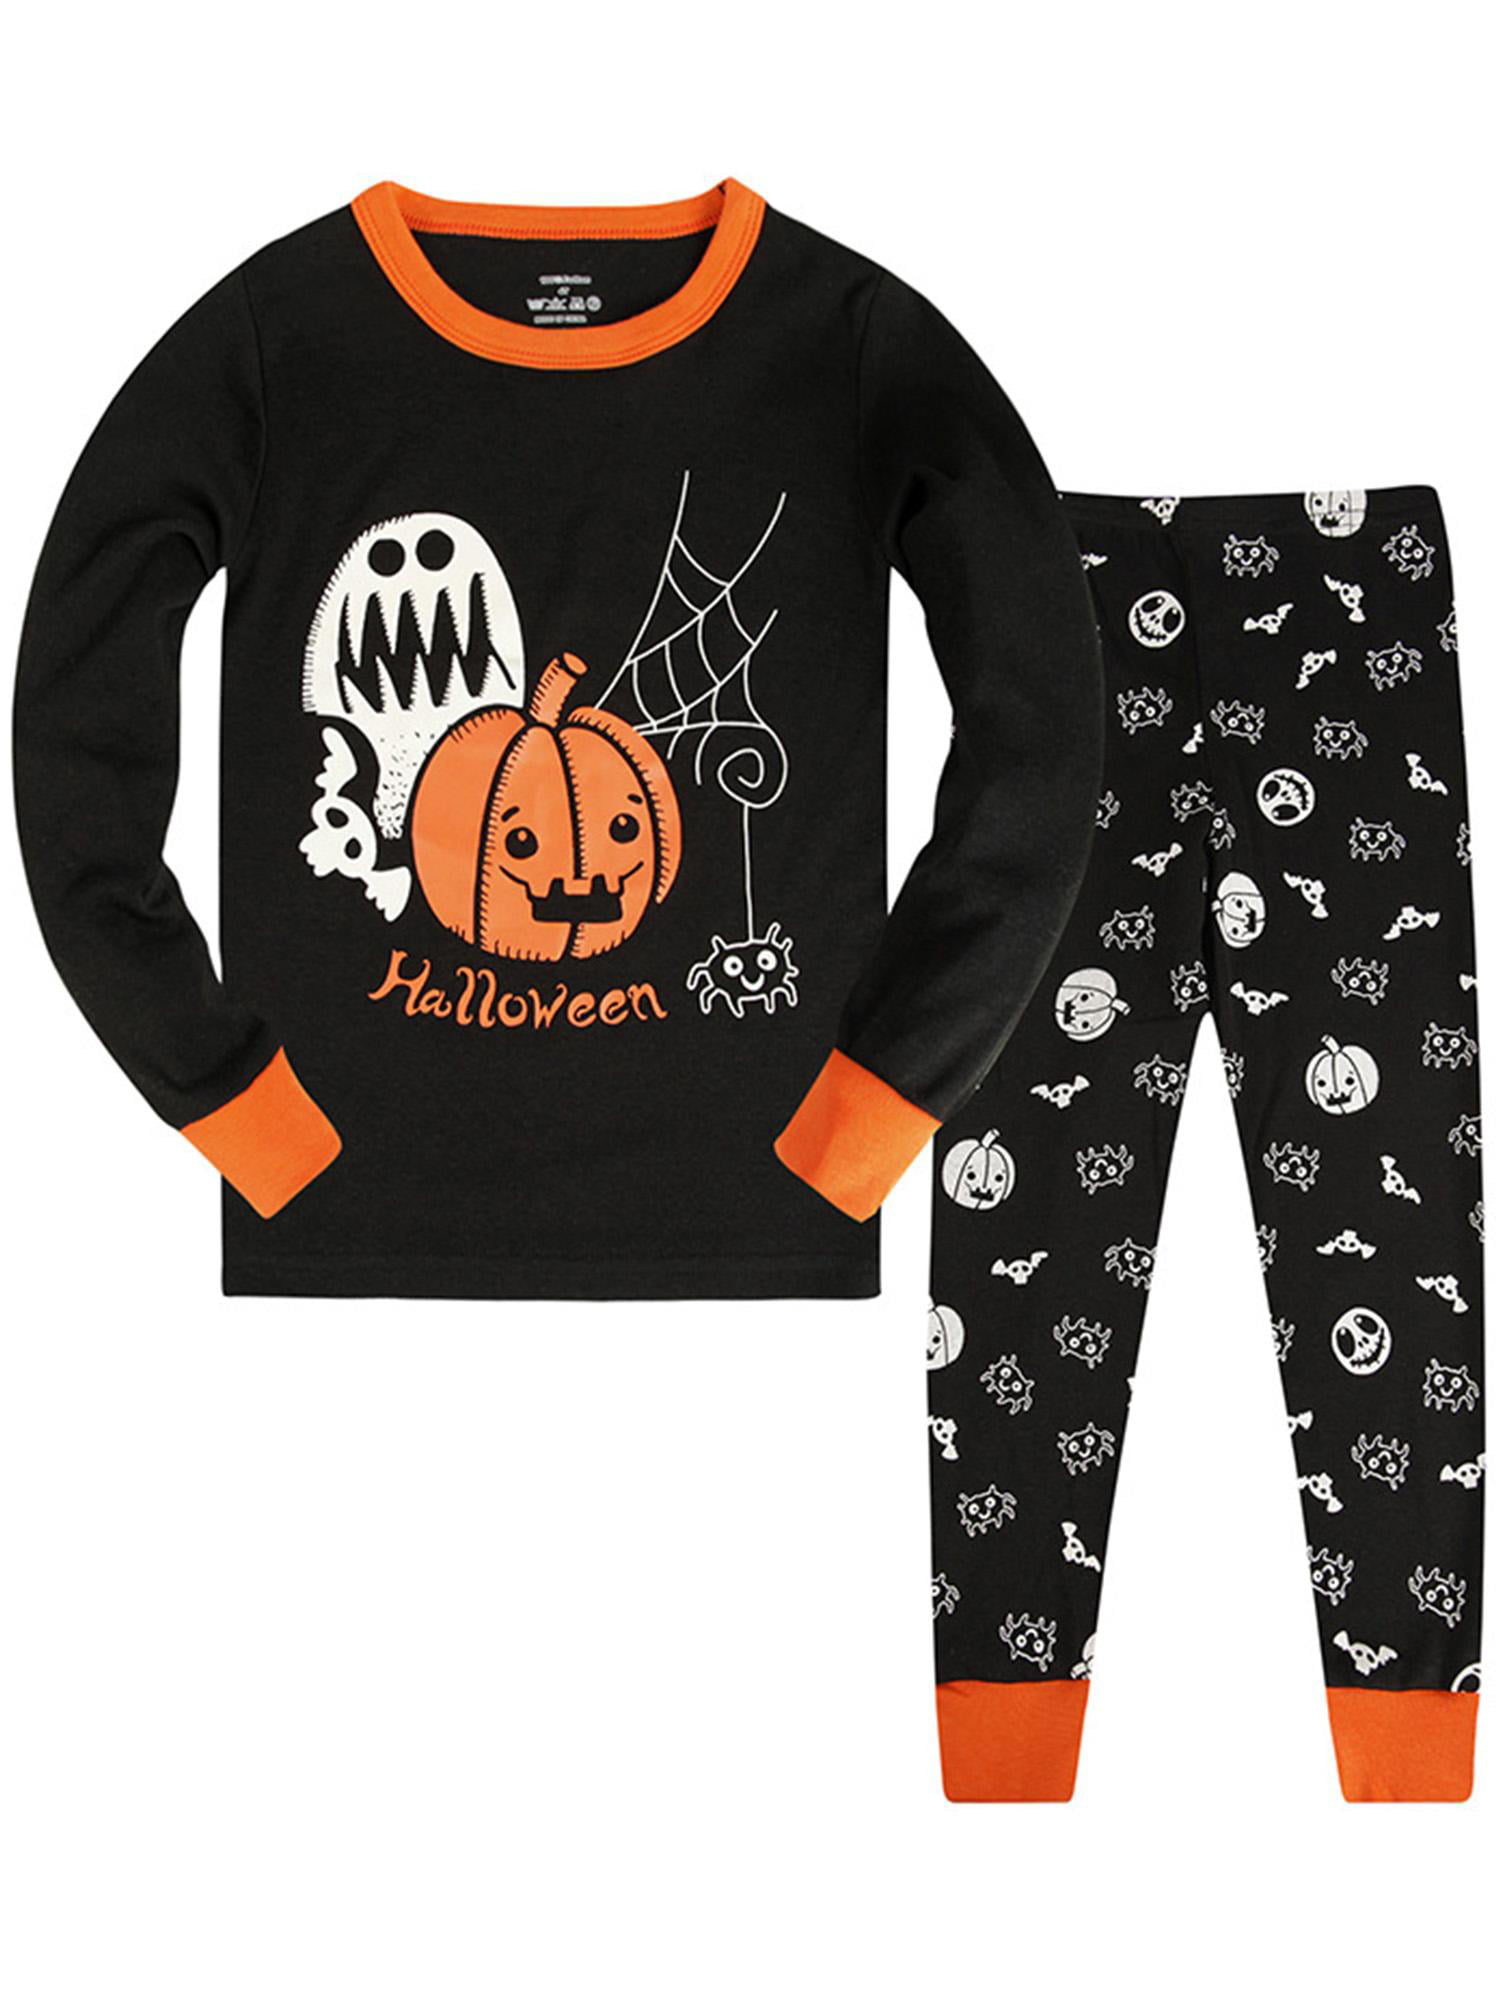 Toddler Pumpkin Pajamas Boys Glow in The Dark Skeleton Pjs 2 Piece Ghost Sleepwear Kids Halloween Clothes 2-7 Years 